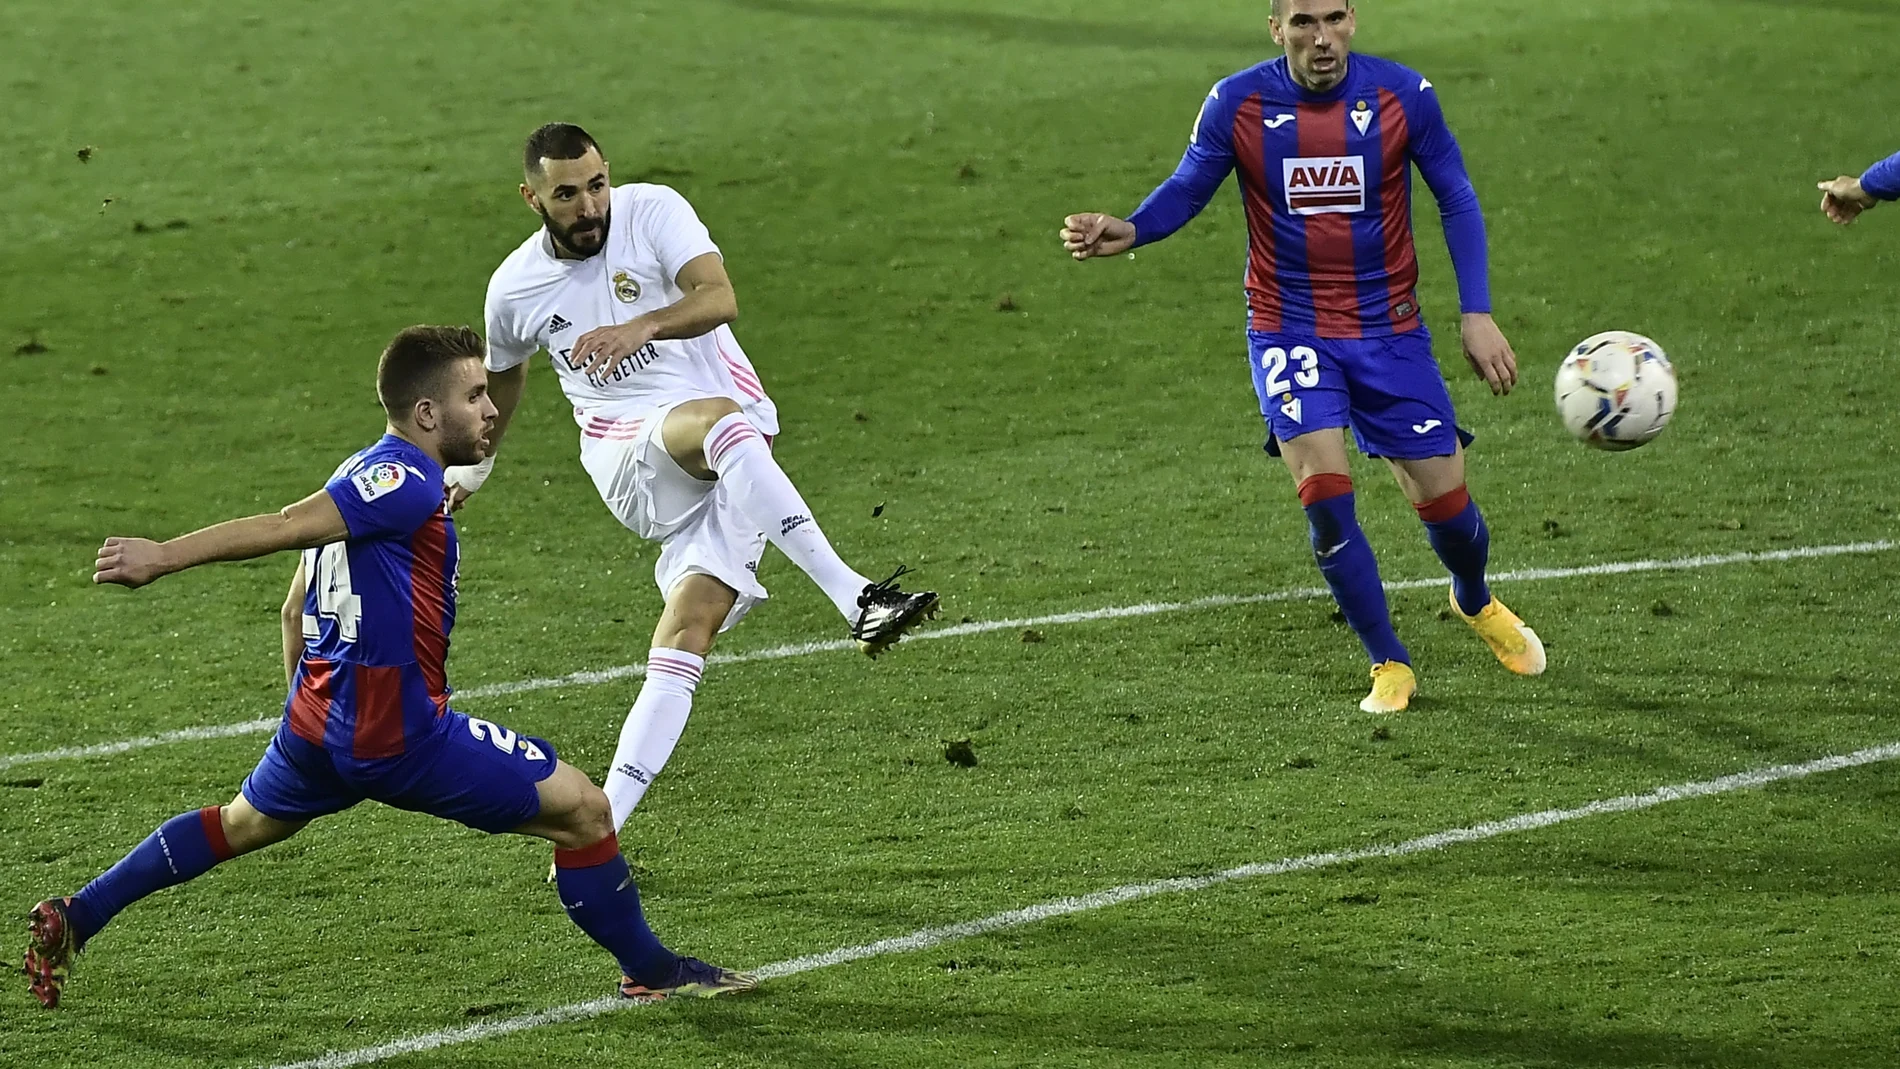 Benzema lanza a portería en el Eibar - Real Madrid